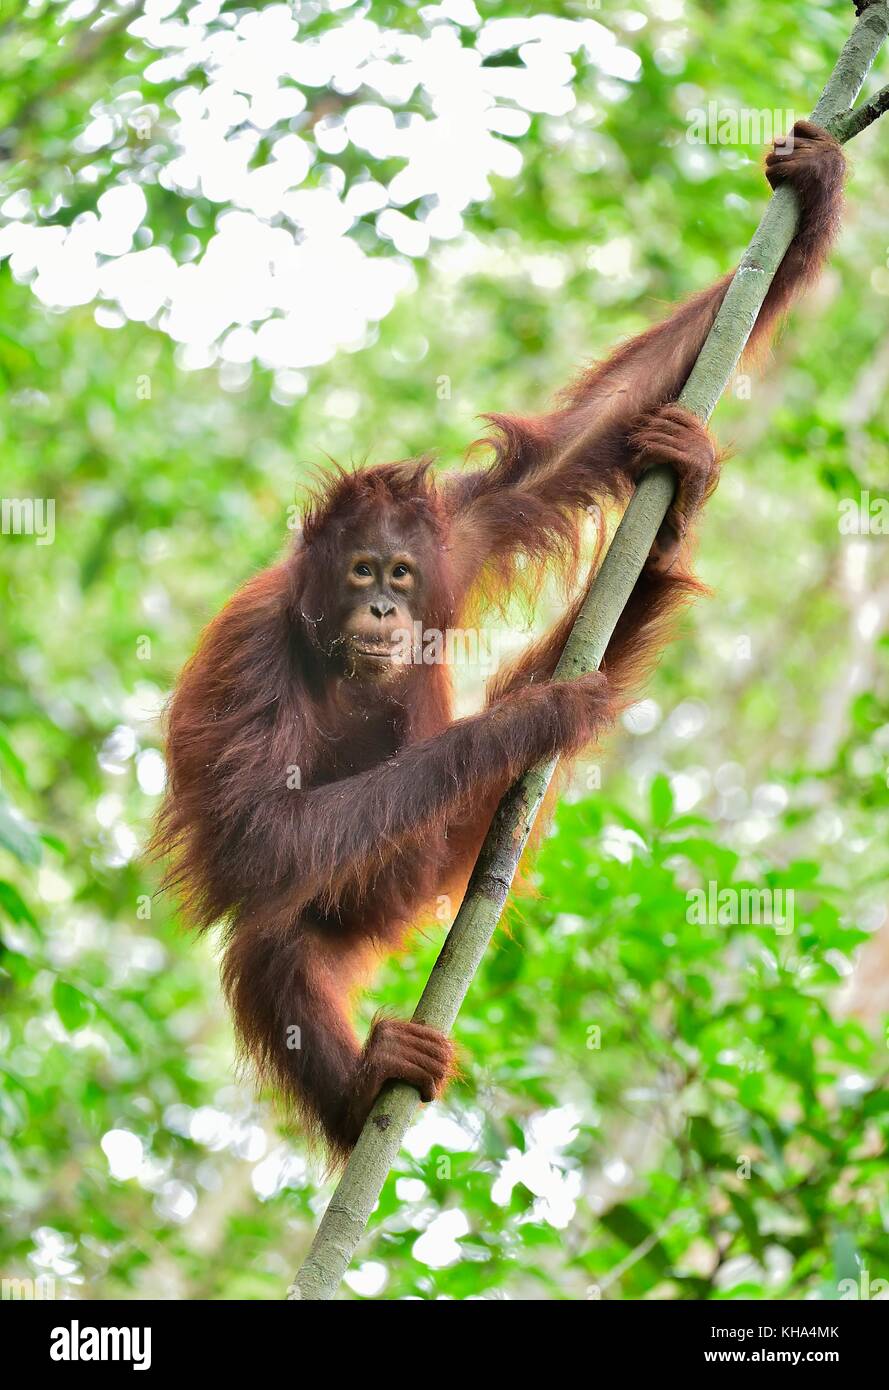 L'orang-outan de Bornéo central ( Pongo pygmaeus wurmbii ) sur l'arbre dans l'habitat naturel. la nature sauvage dans la forêt tropicale de Bornéo en Indonésie. Banque D'Images